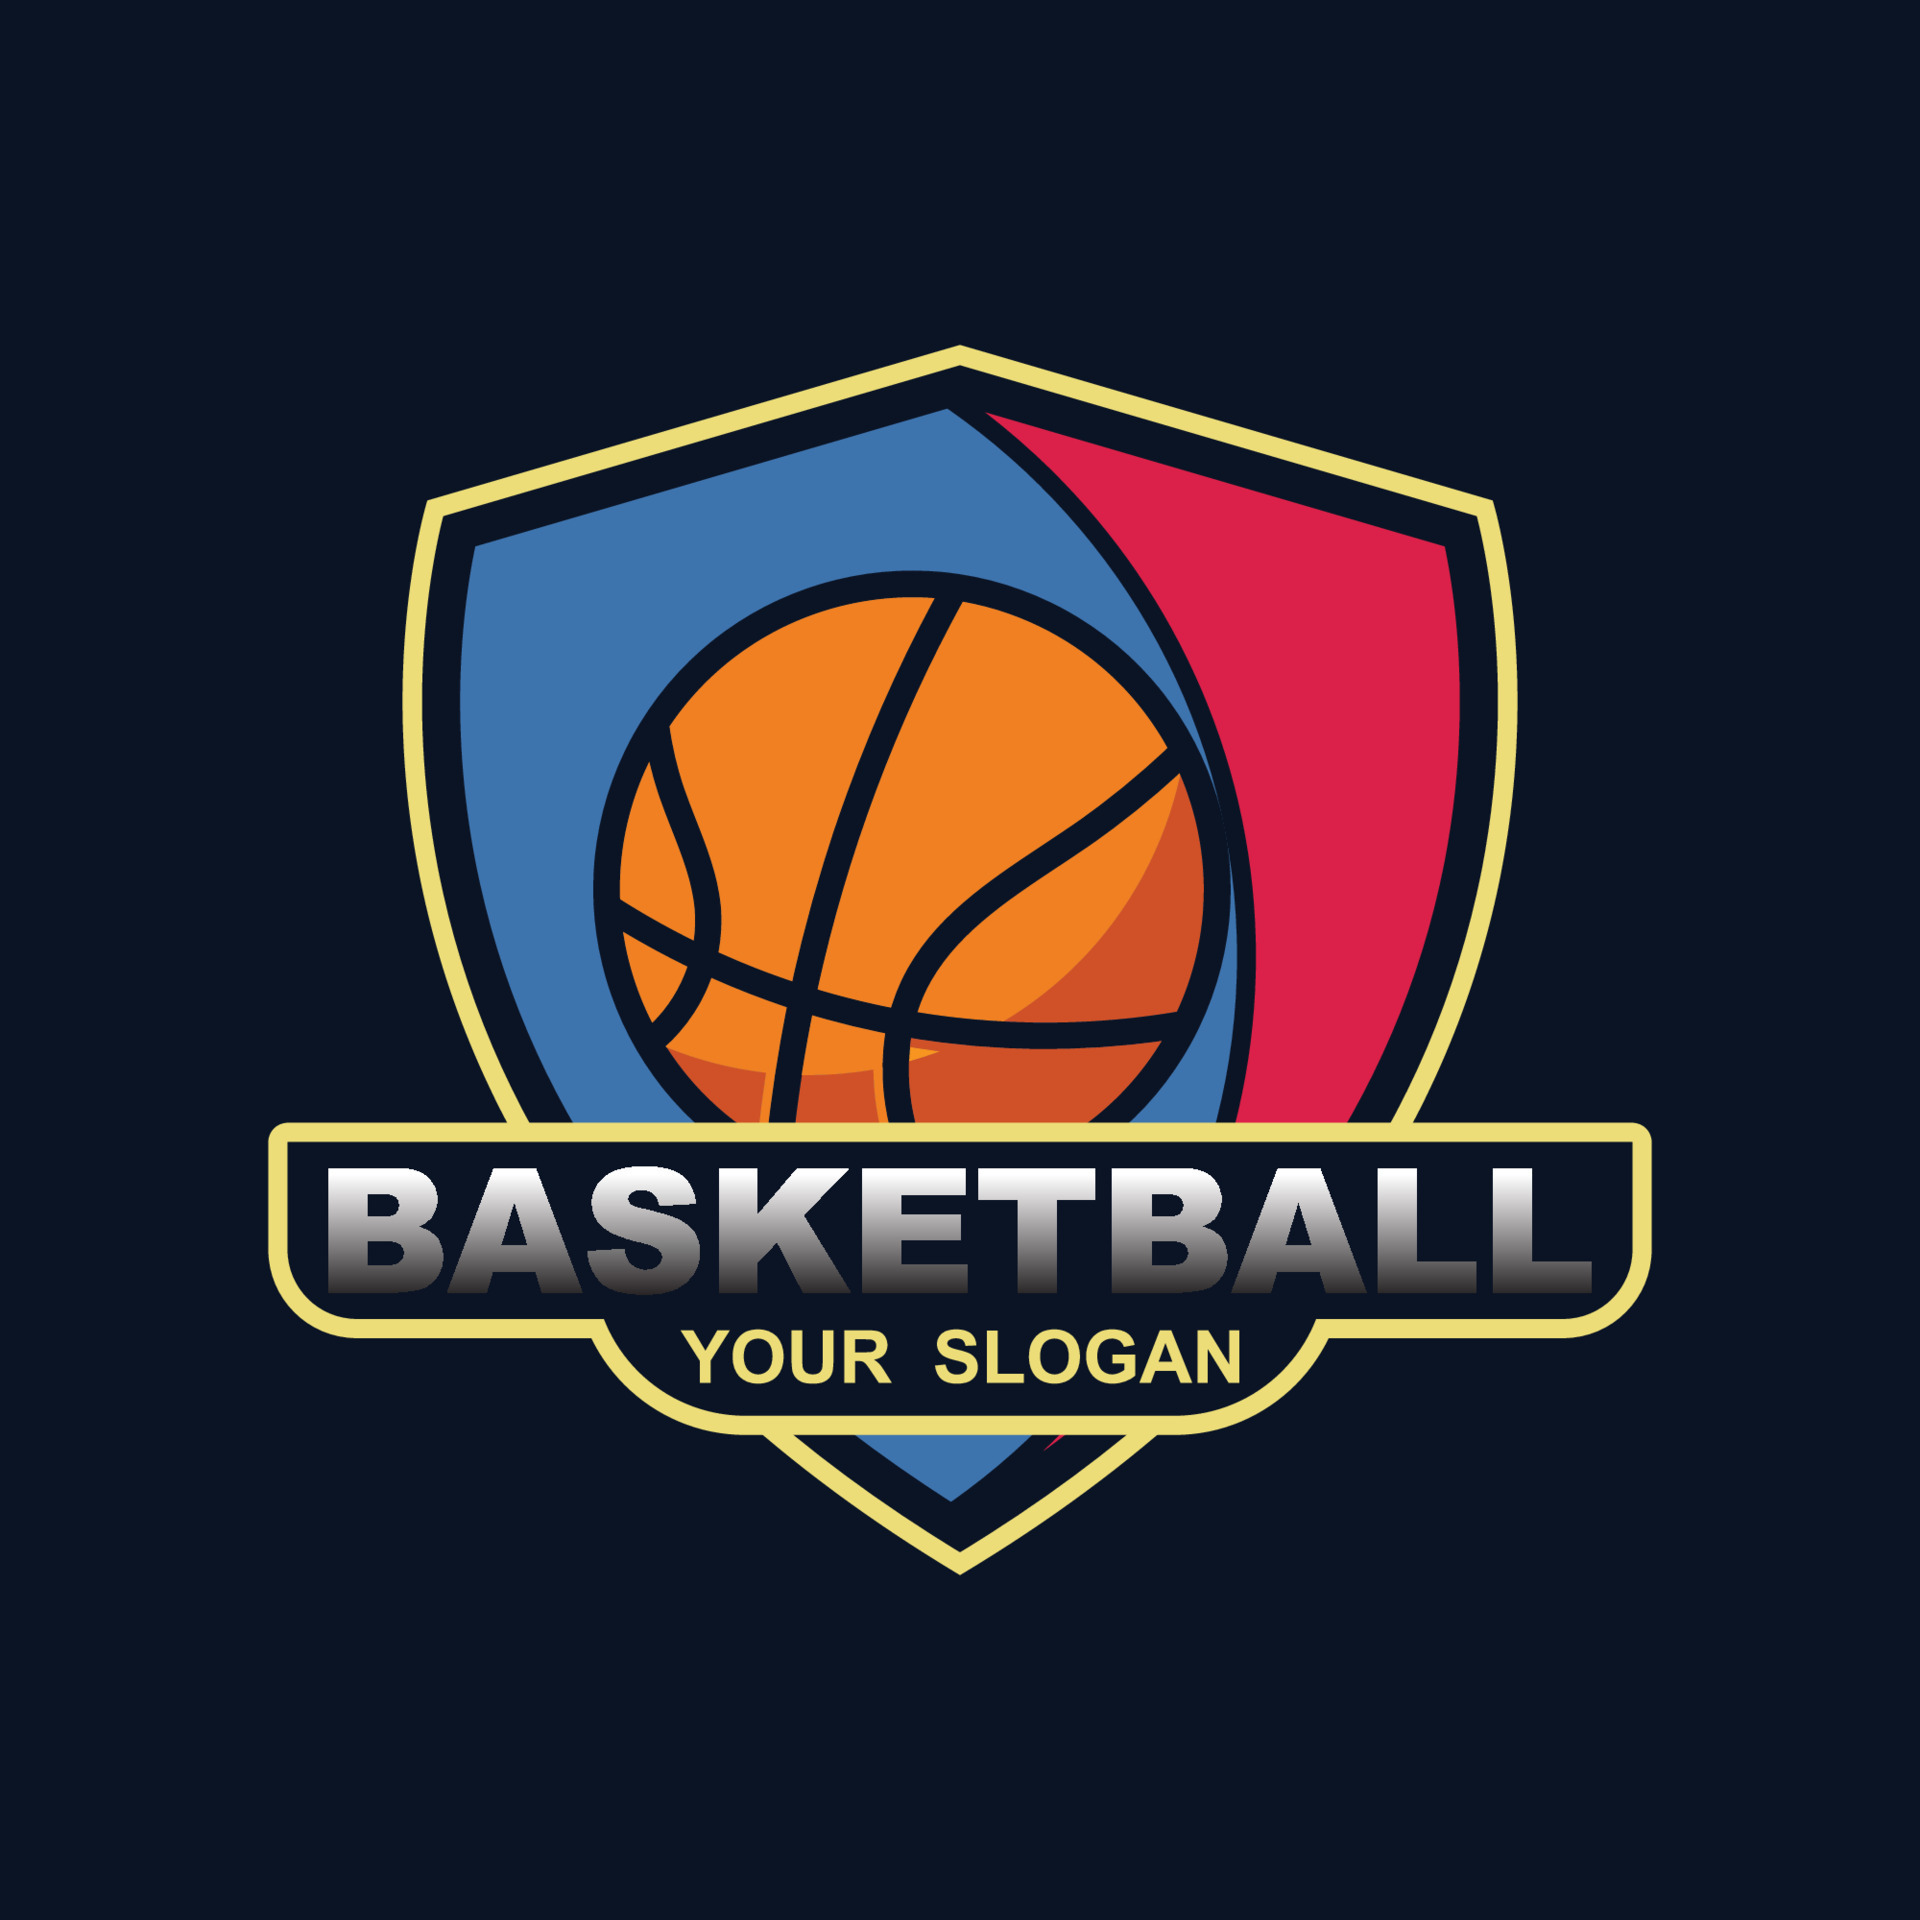 Basketball logo vector design template 24479004 Vector Art at Vecteezy